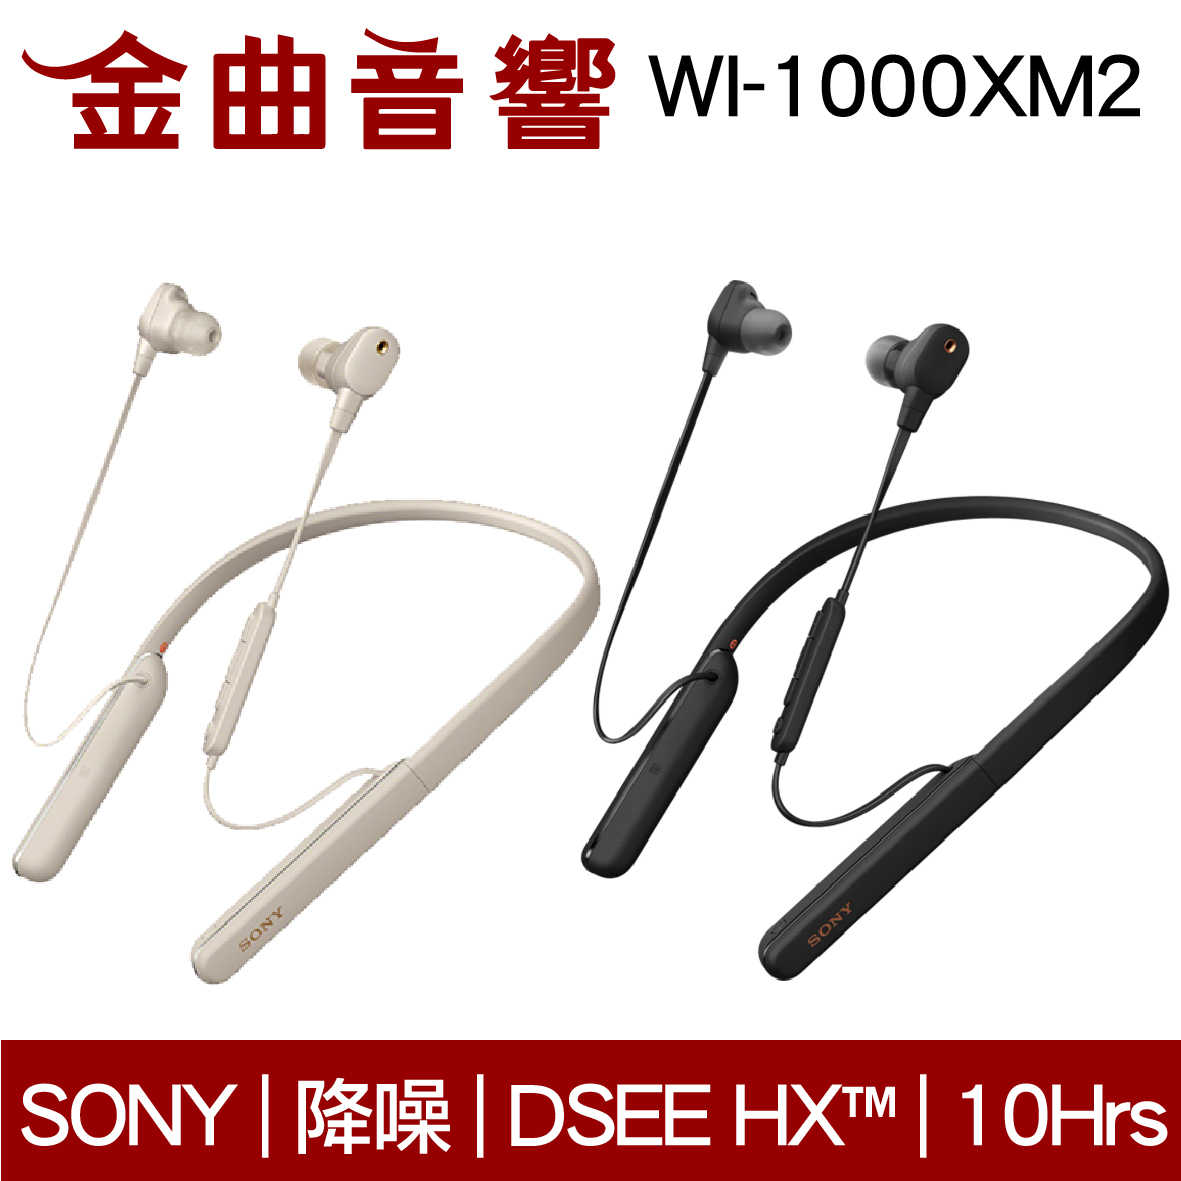 現貨免運 SONY 索尼 WI-1000XM2 兩色可選 無線 降噪 入耳式耳機 | 金曲音響